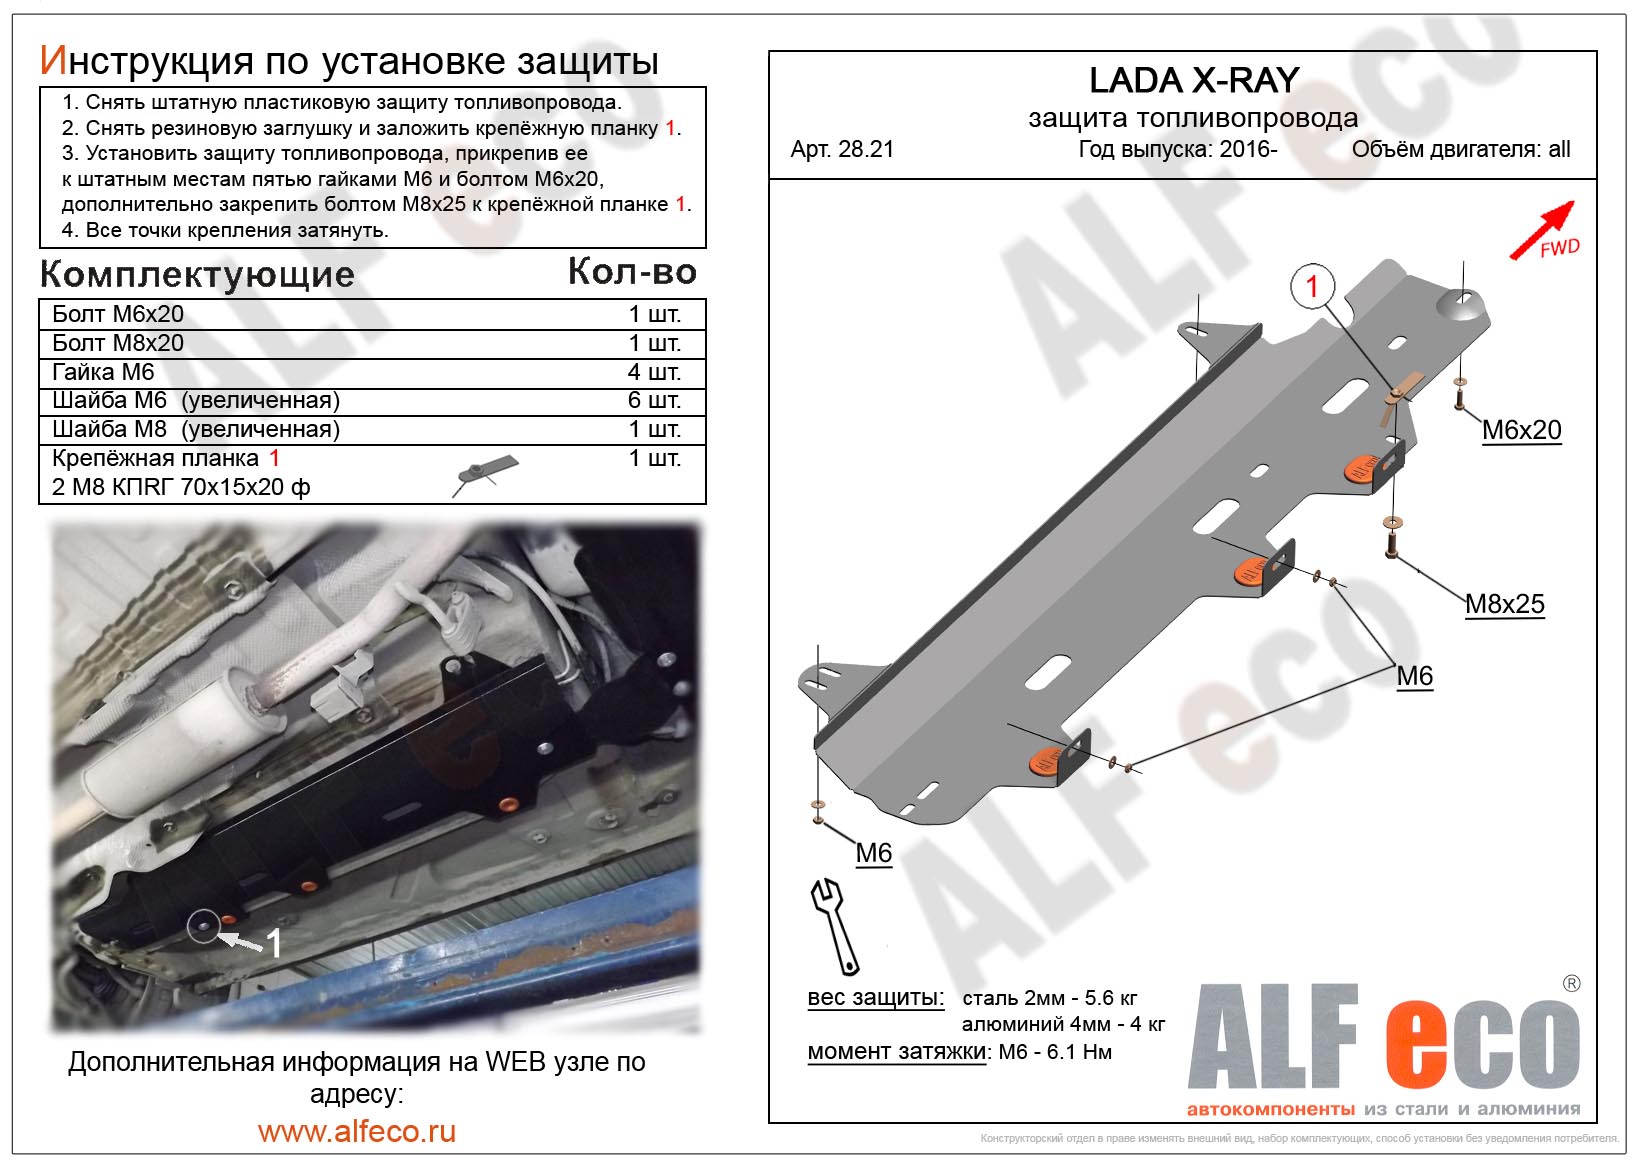 Lada X-Ray защита топливопровода сталь 2мм